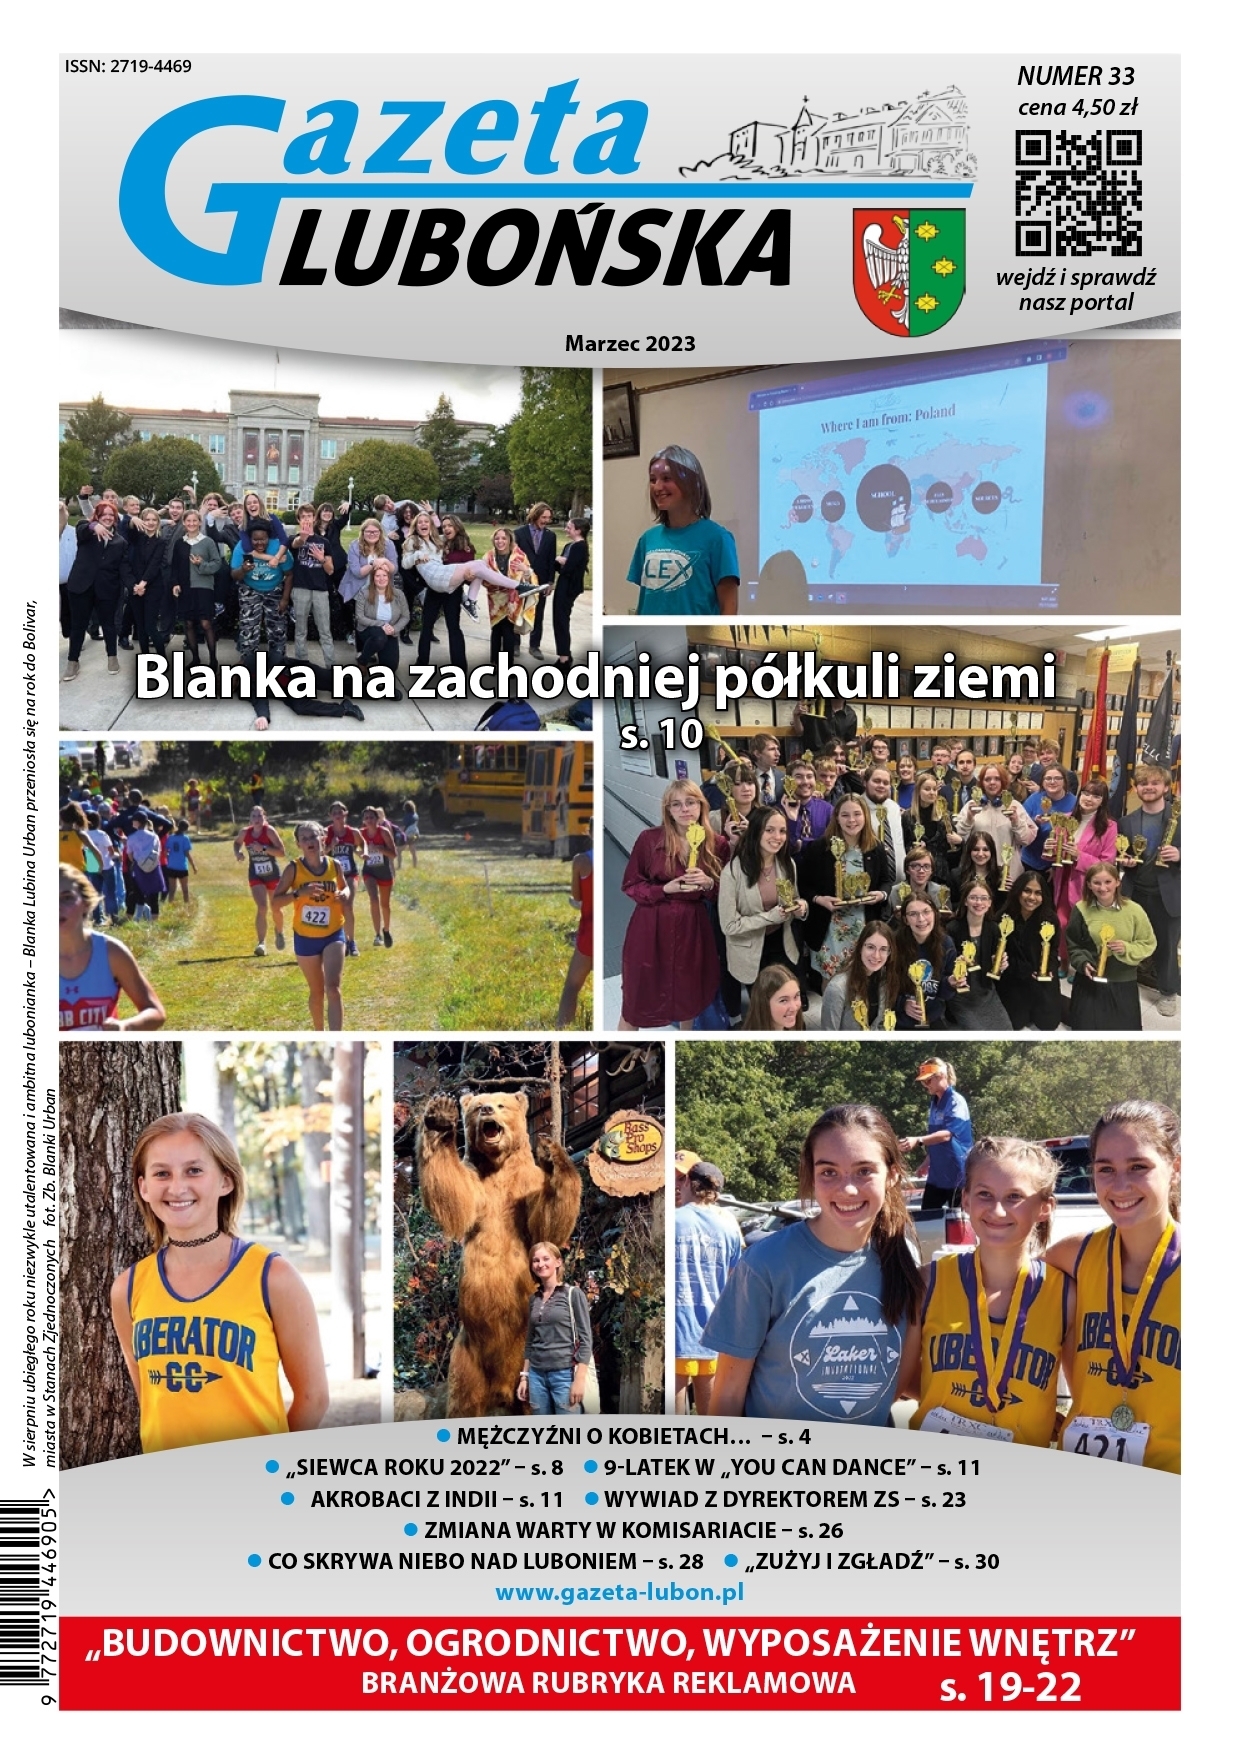 Gazeta Lubońska wydanie Marzec 2023 - okładka